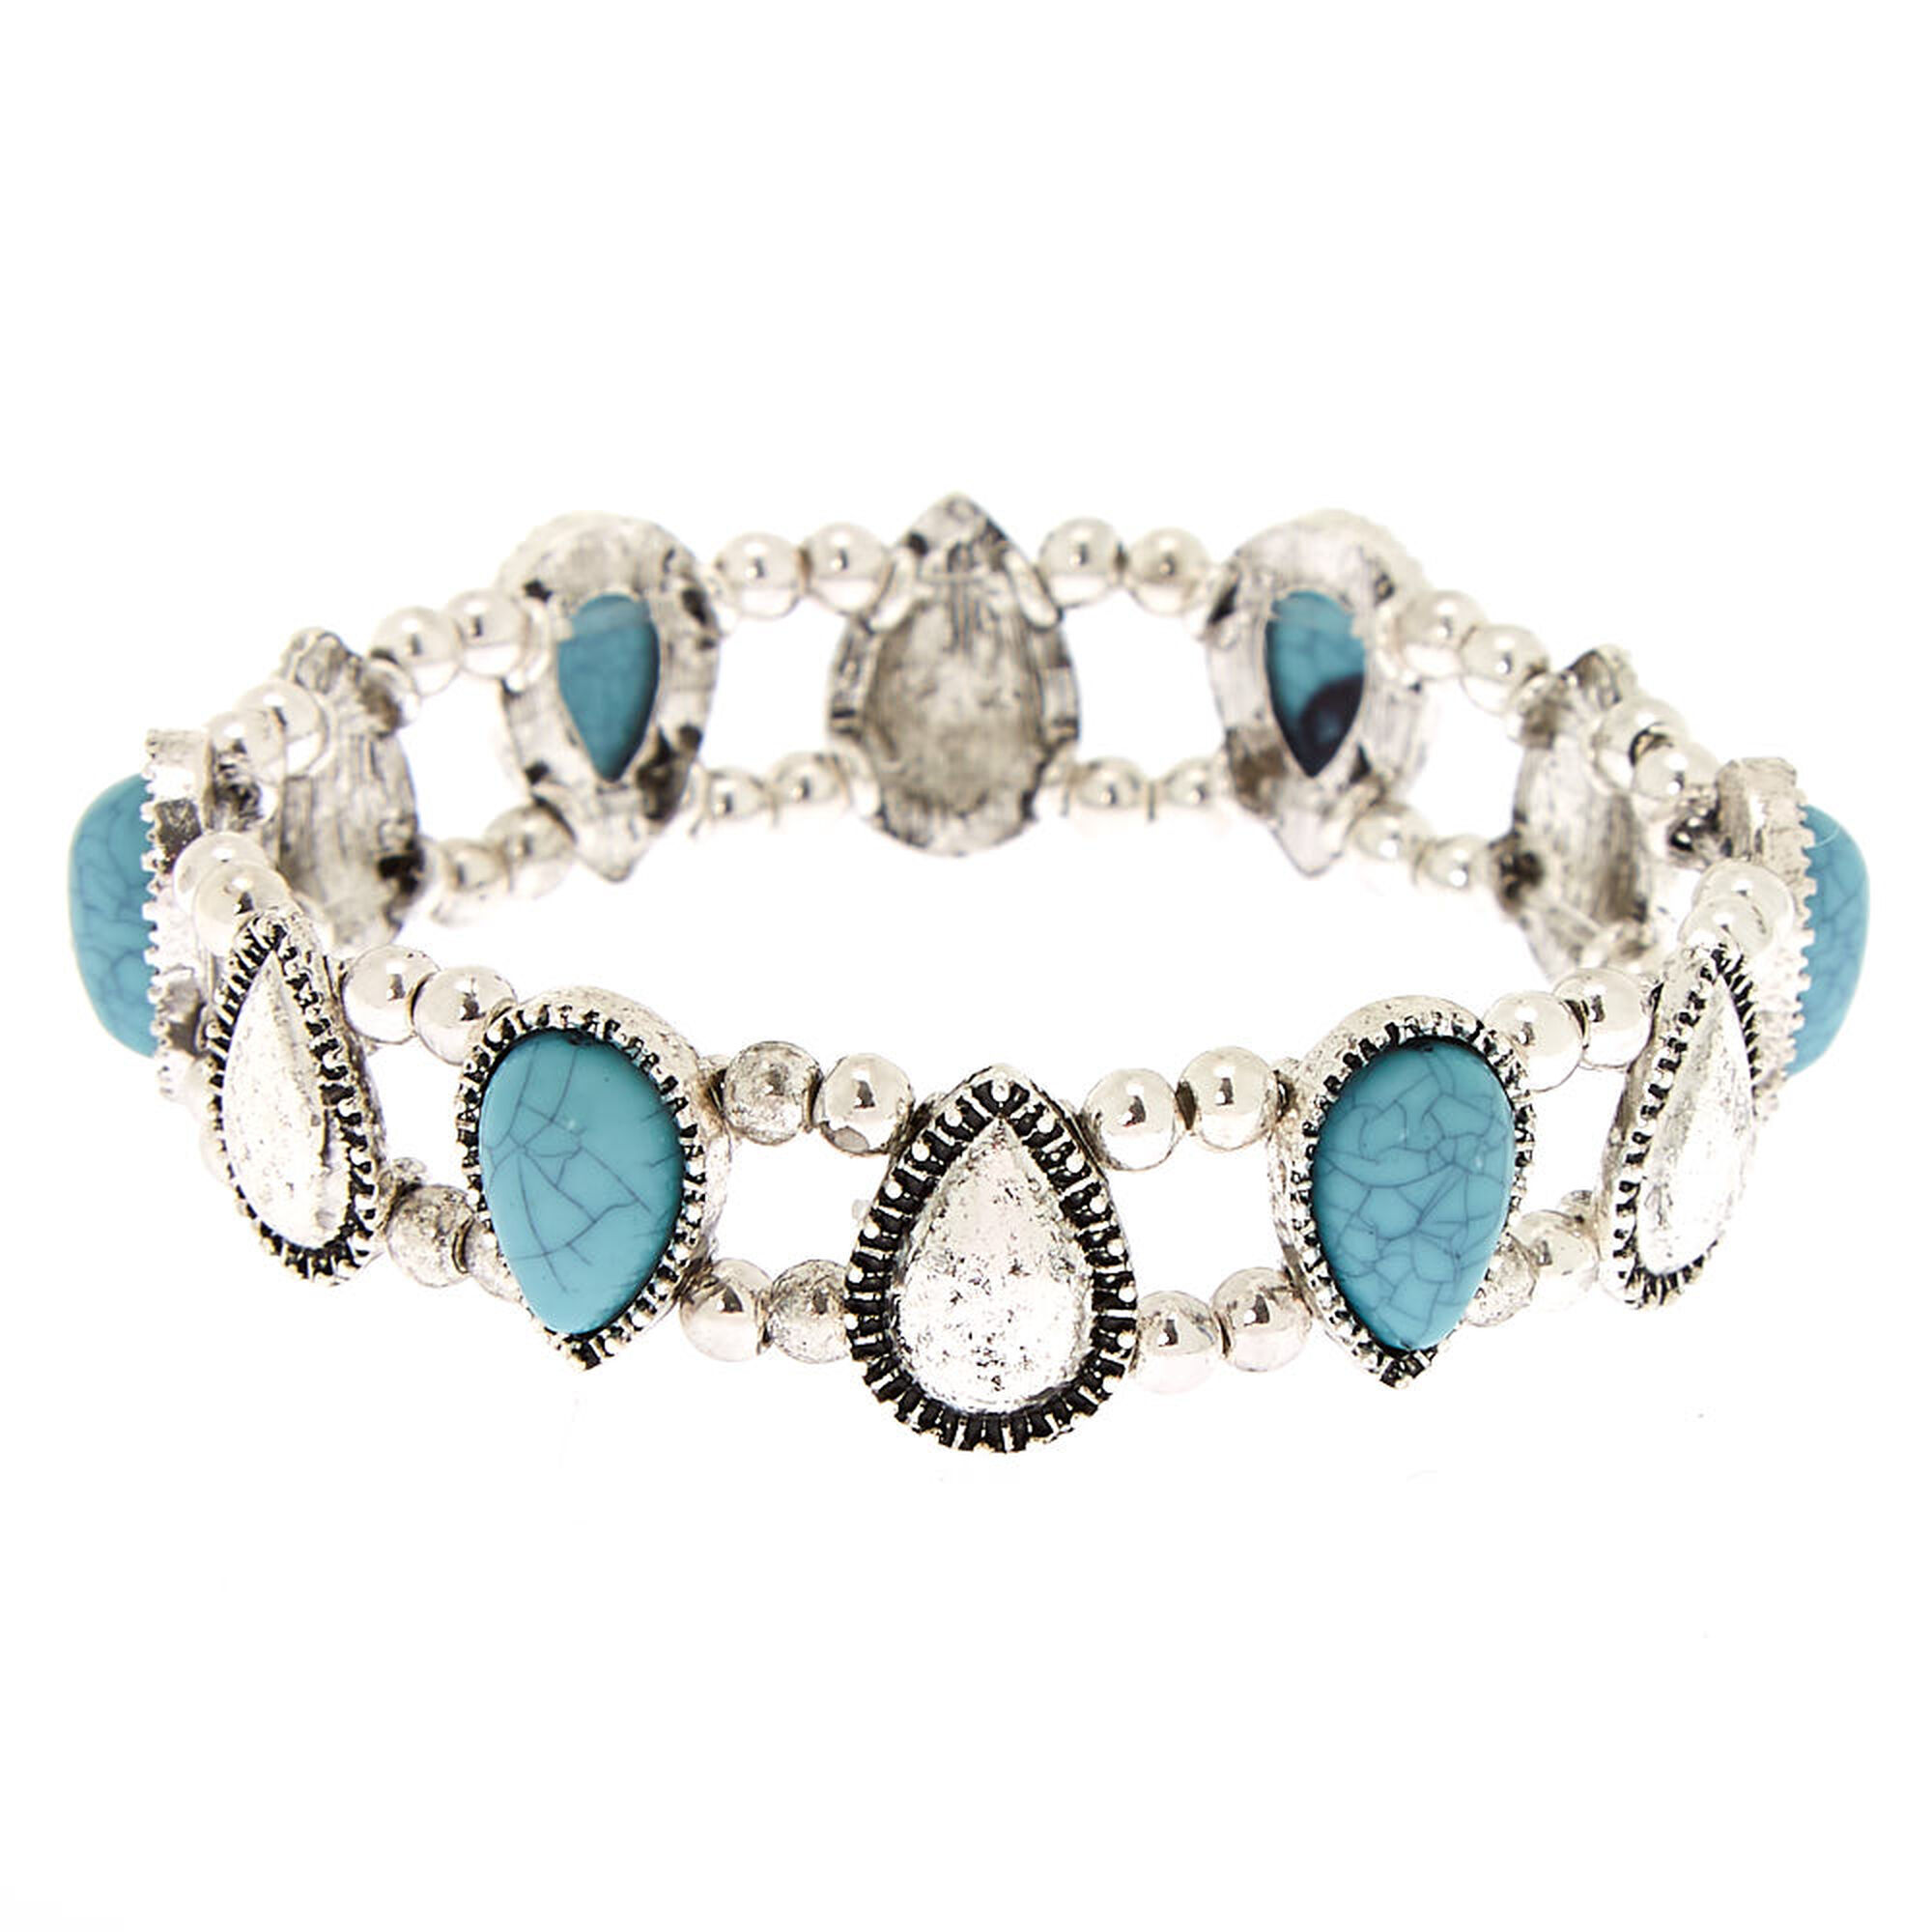 Antique Silver Teardrop Stretch Bracelet - Turquoise | Claire's US